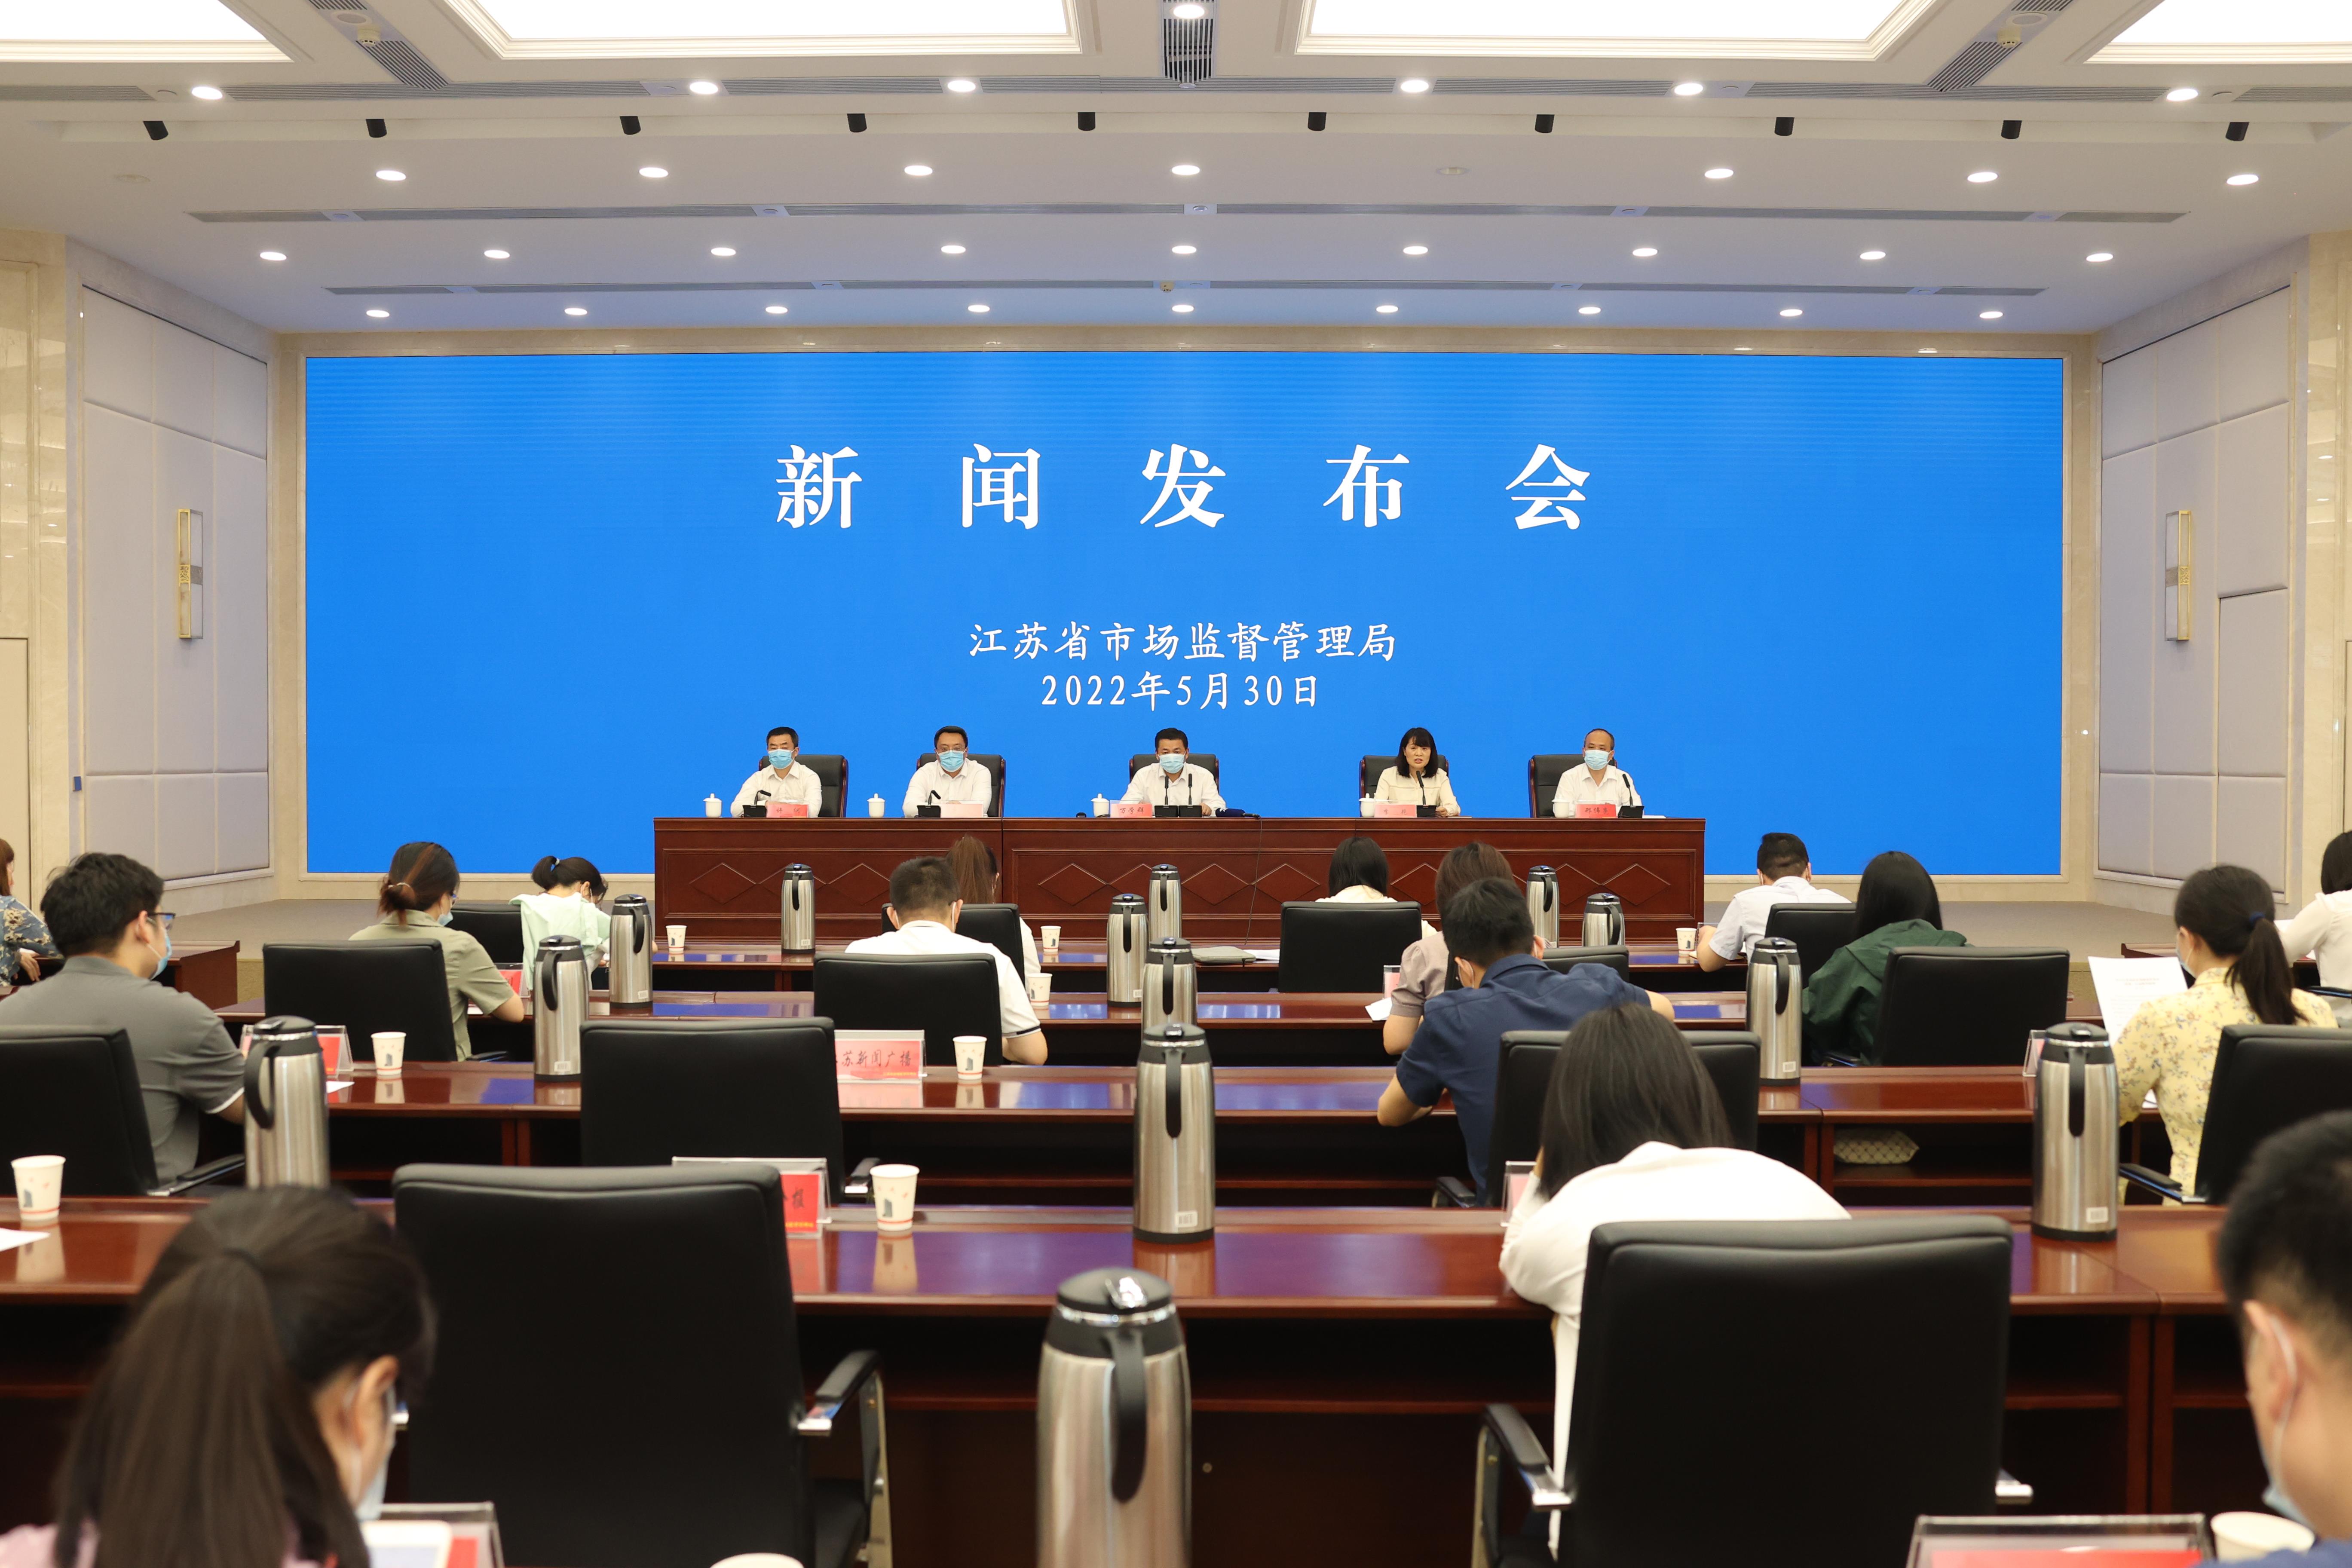 “铁拳”行动 ︳江苏省宣告2022年“铁拳”行动增长情景落选二批典型案例